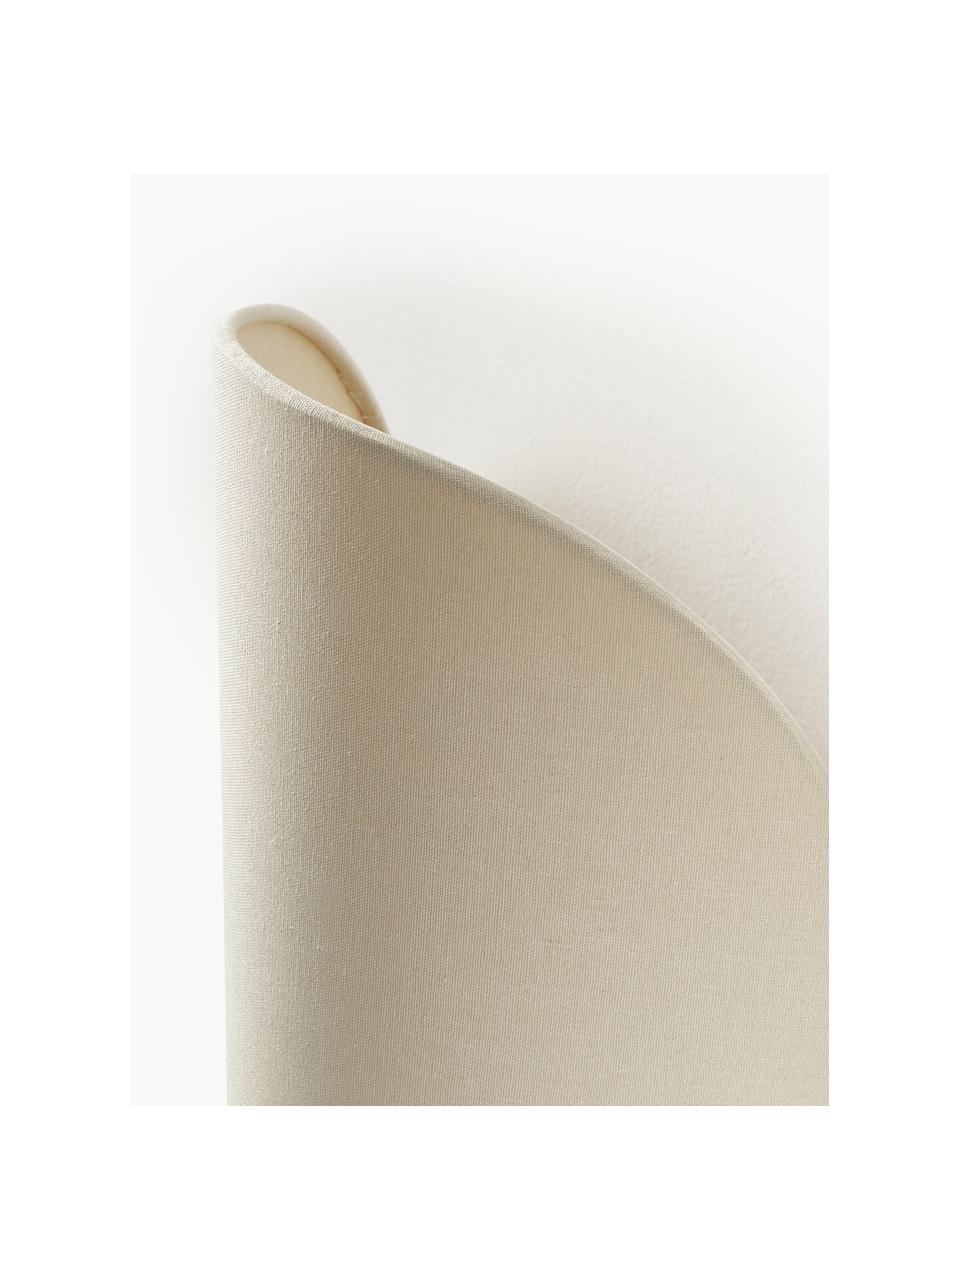 Design-Wandleuchte Kenzie aus Leinen, Lampenschirm: Leinen, Hellbeige, B 23 x H 30 cm